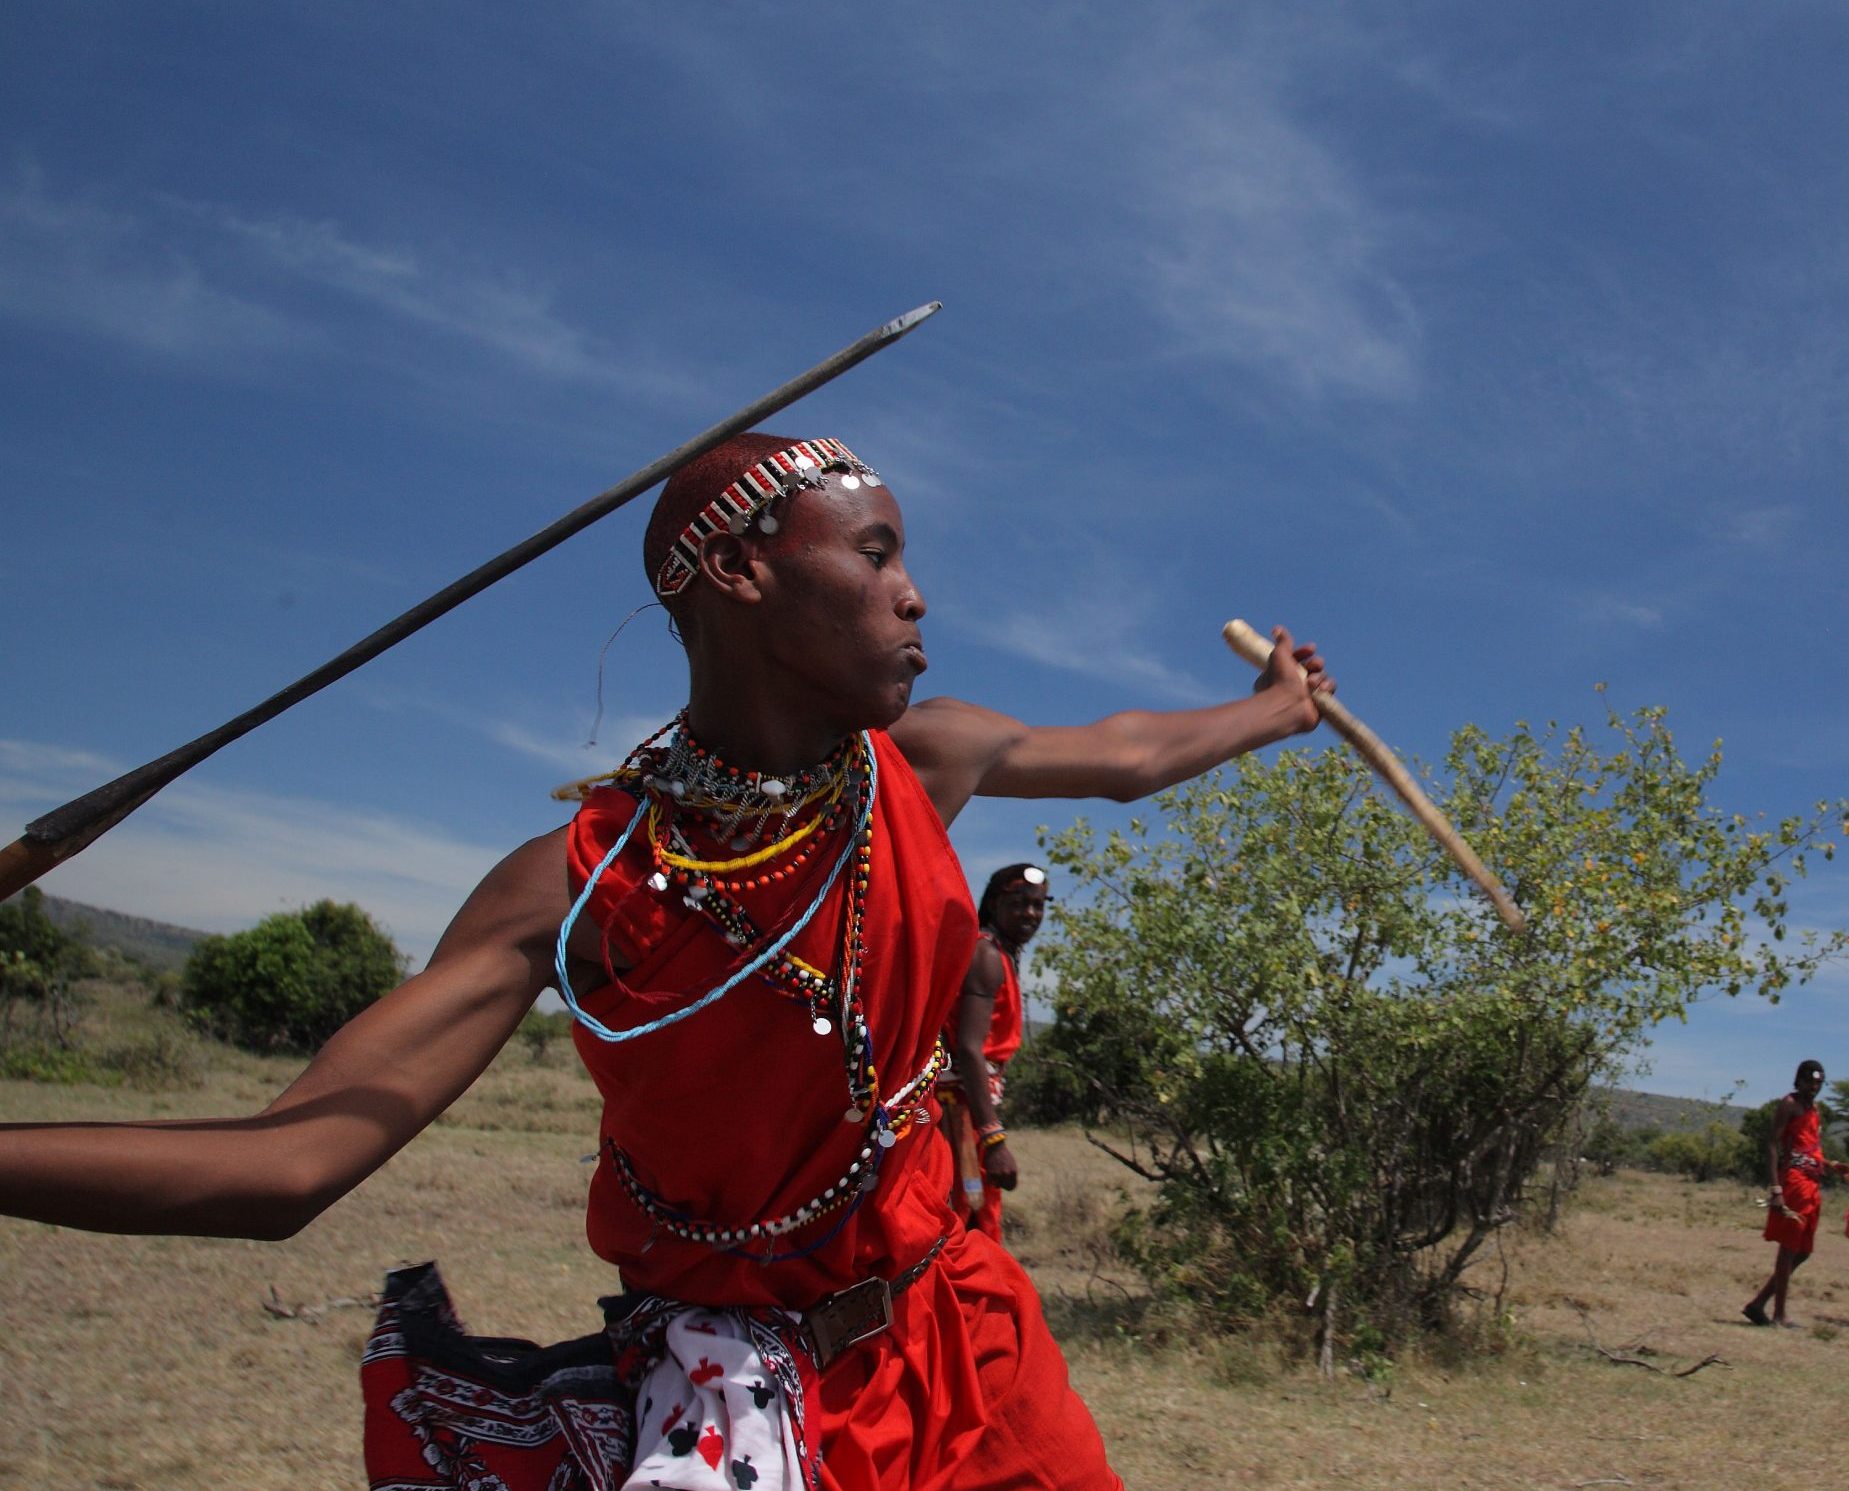 Maasai-warrior-throwing-a-spear-scaled-e1588336584493.jpg